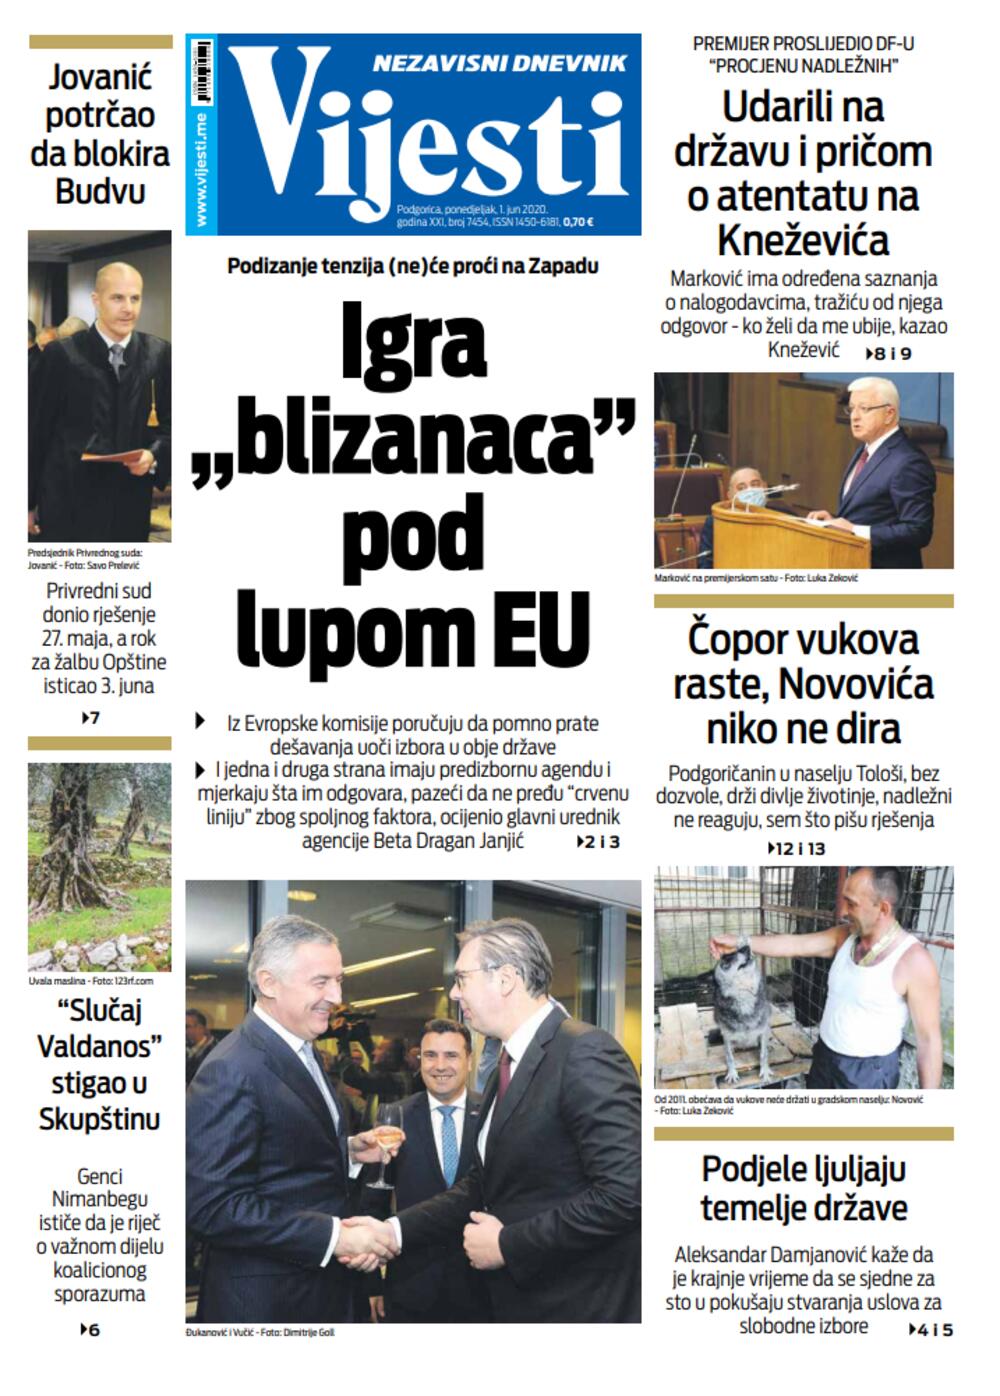 Naslovna strana "Vijesti" za 1. jun 2020., Foto: Vijesti